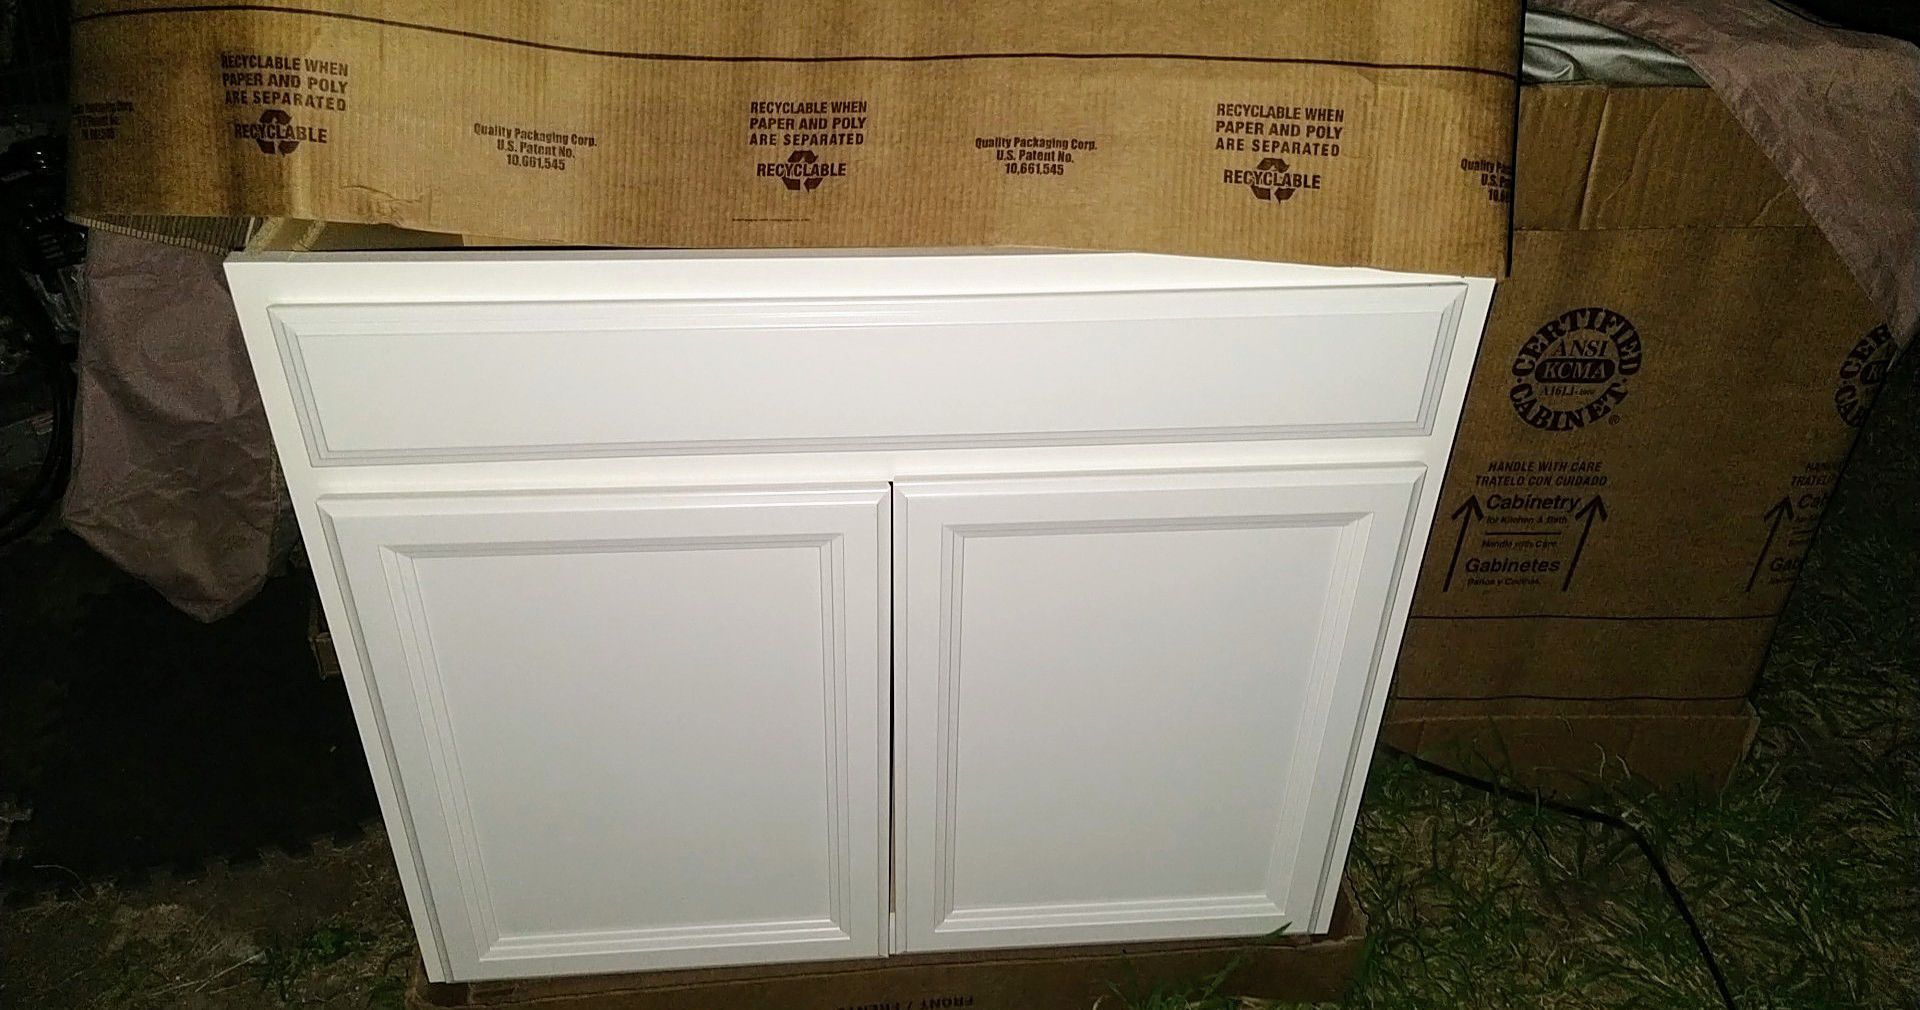 New white shaker style hardwood cabinets